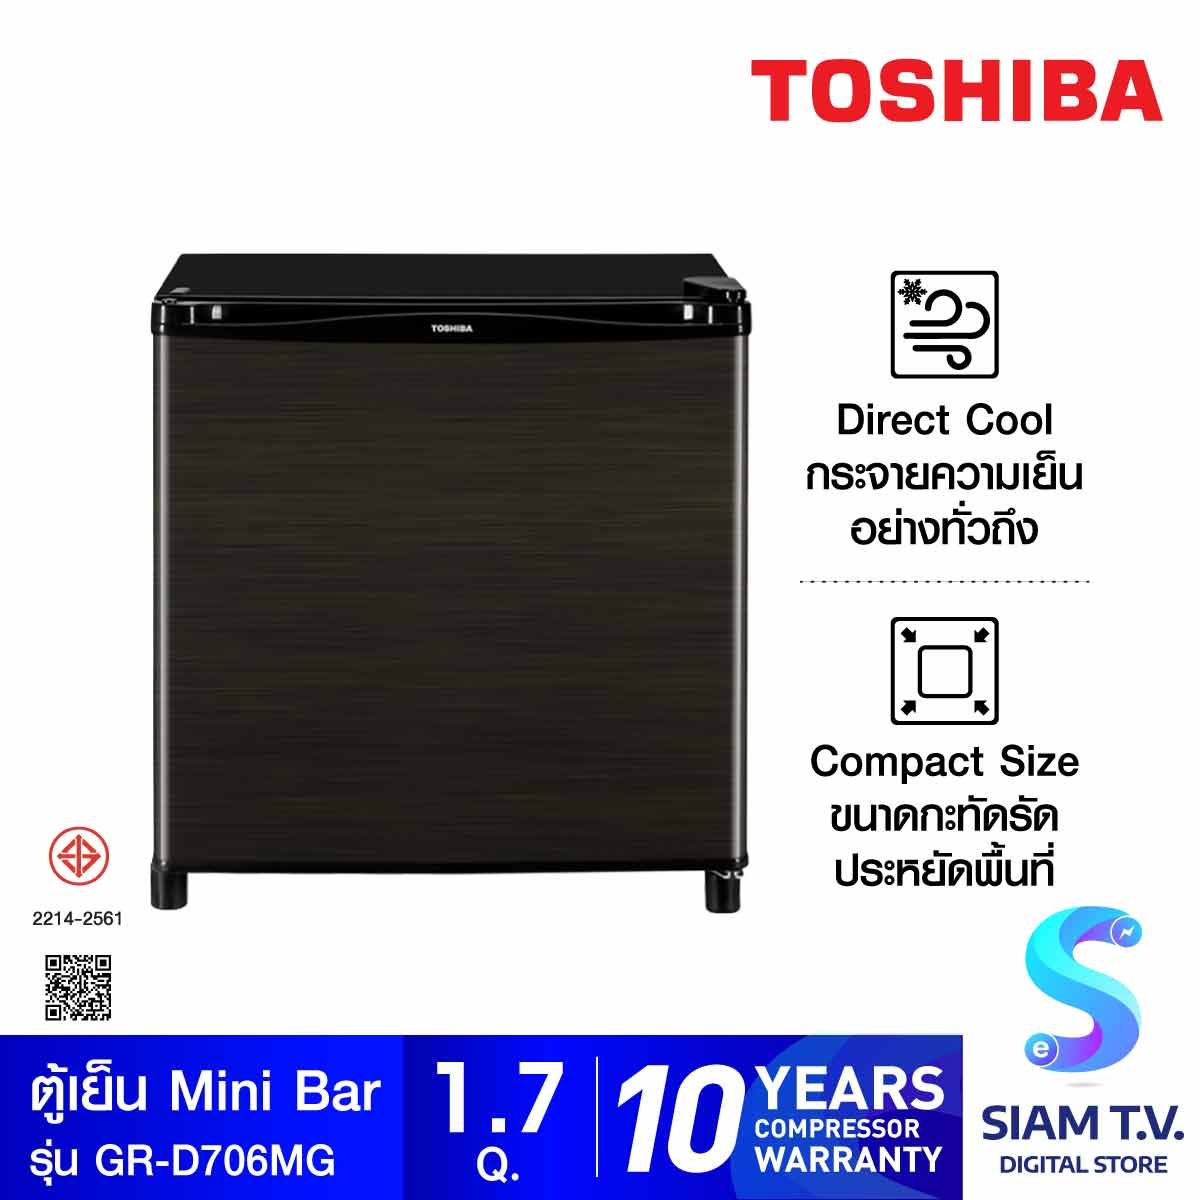 TOSHIBA ตู้เย็นมินิบาร์ ขนาด 1.7 คิว สีดำ รุ่น GR-D706